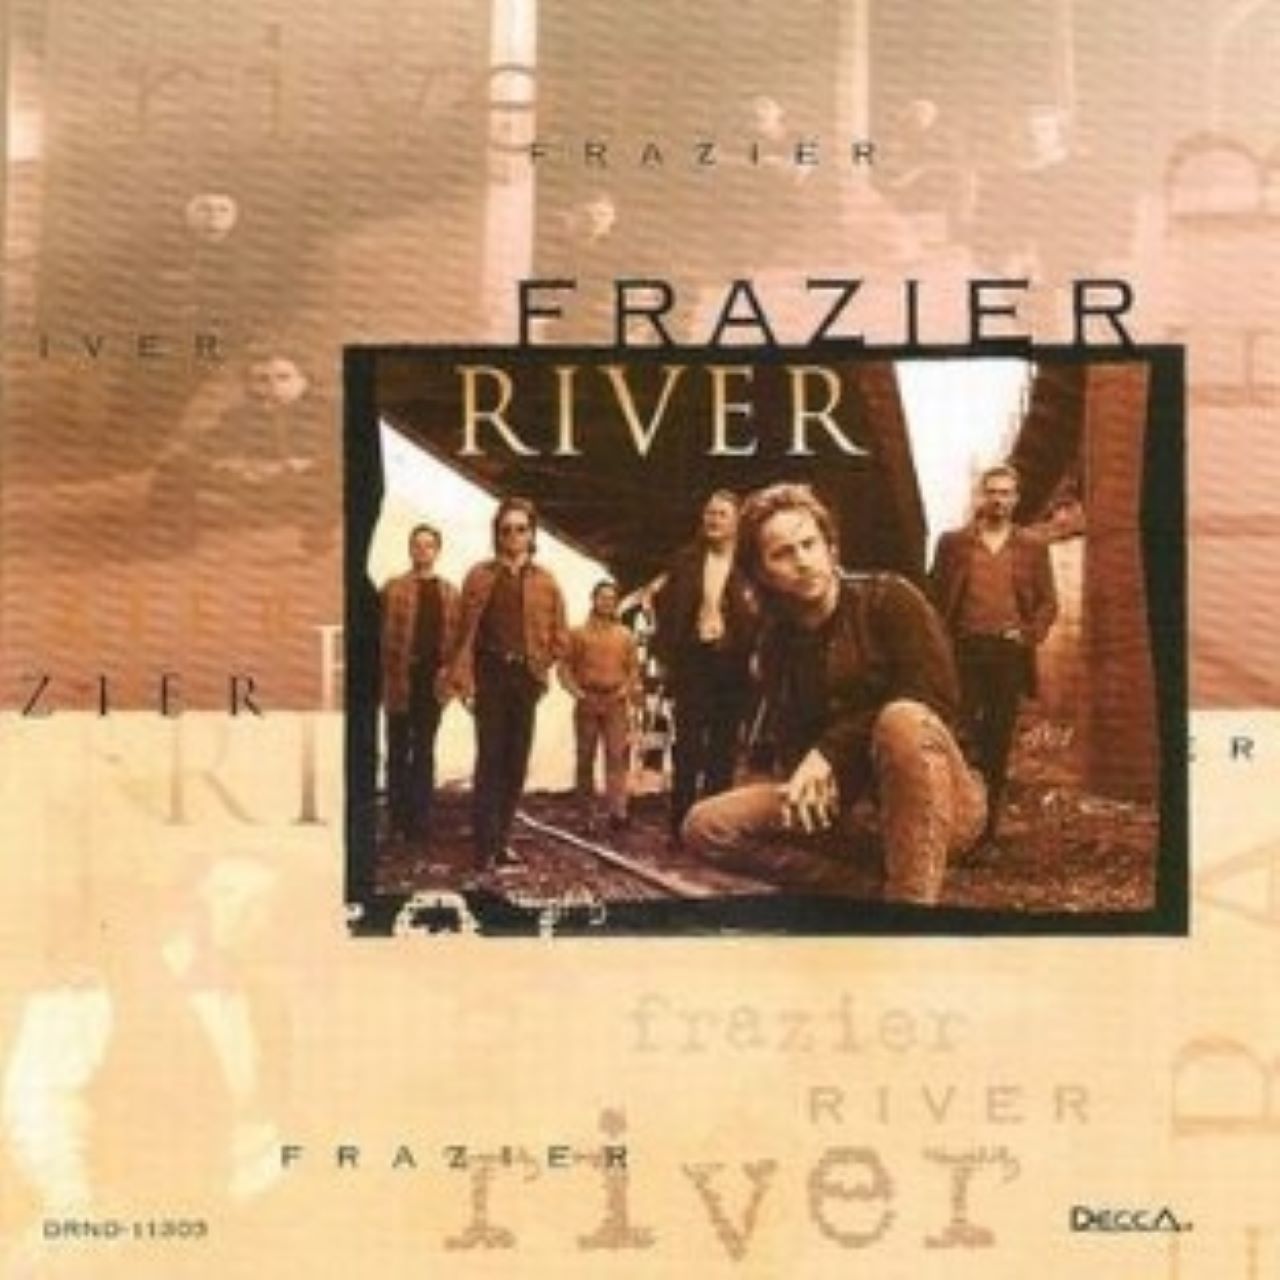 Frazier River - Frazier River cover album